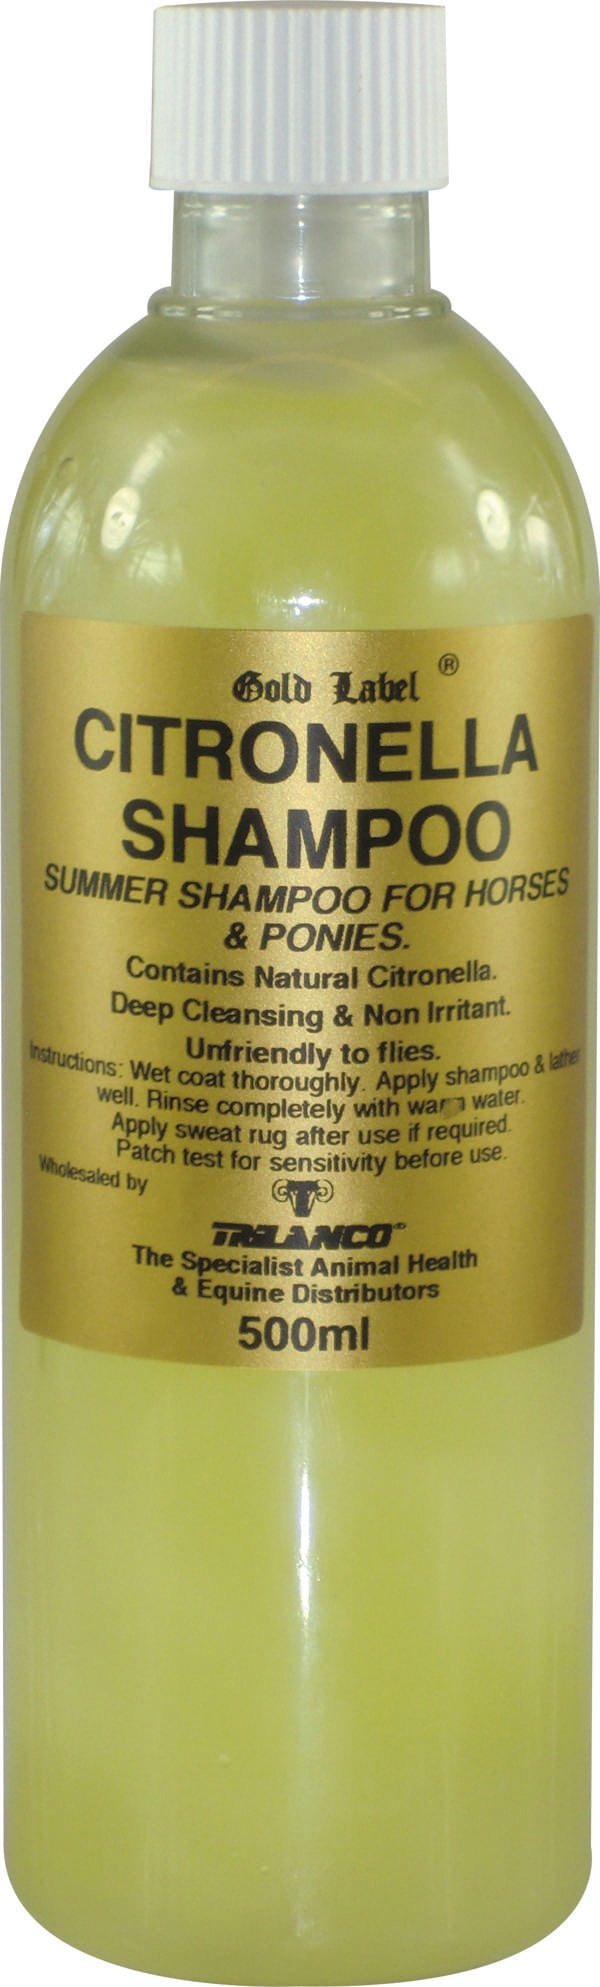 Gold Label Shampoo Citronella 500ml